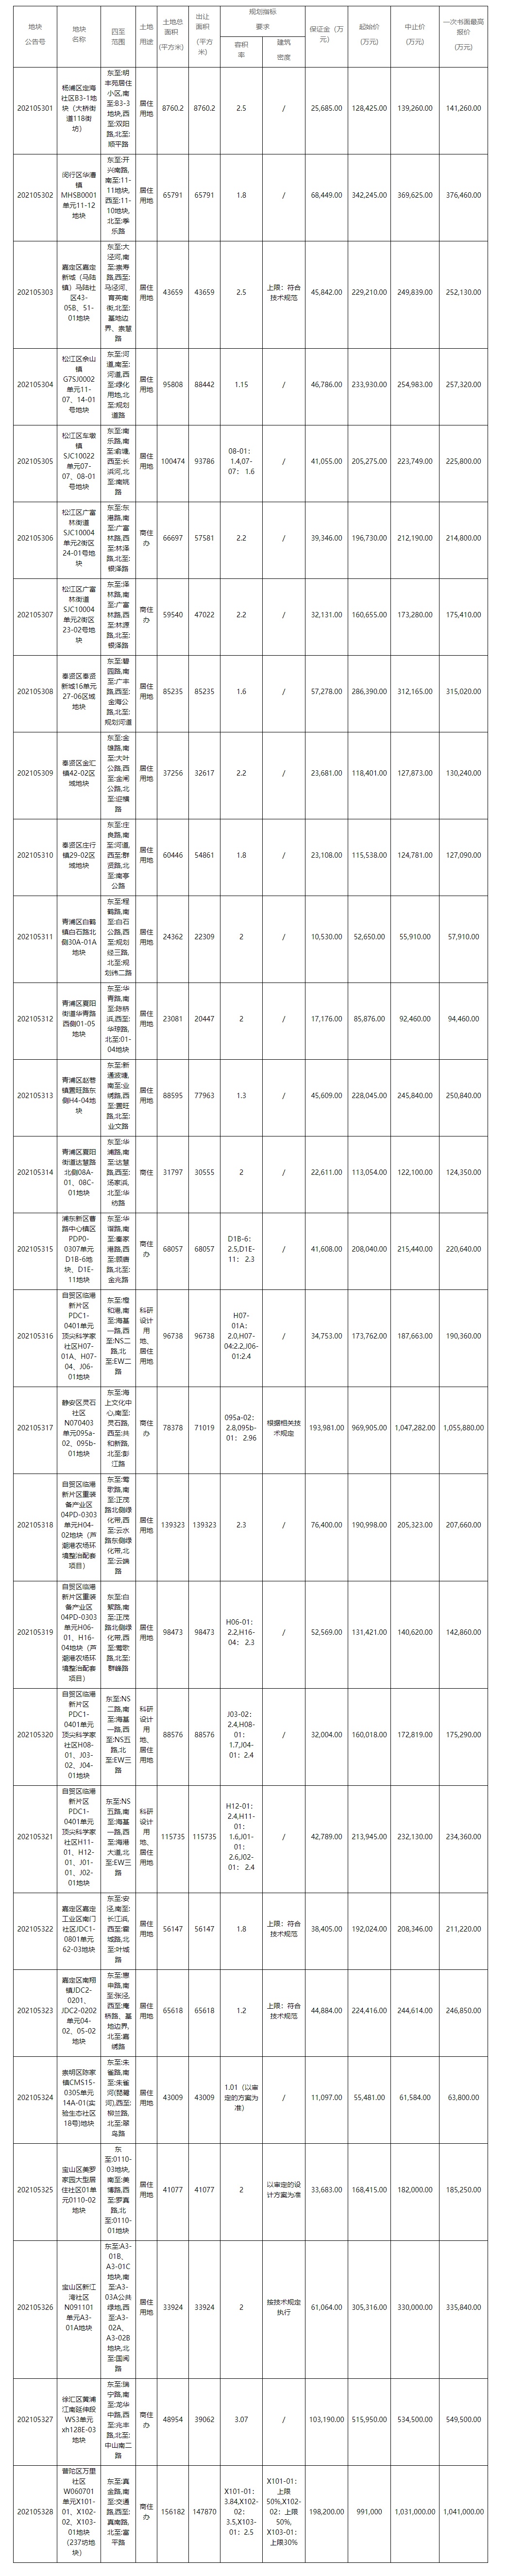 上海发布首批56幅集中出让地块，总起始价820.82亿元